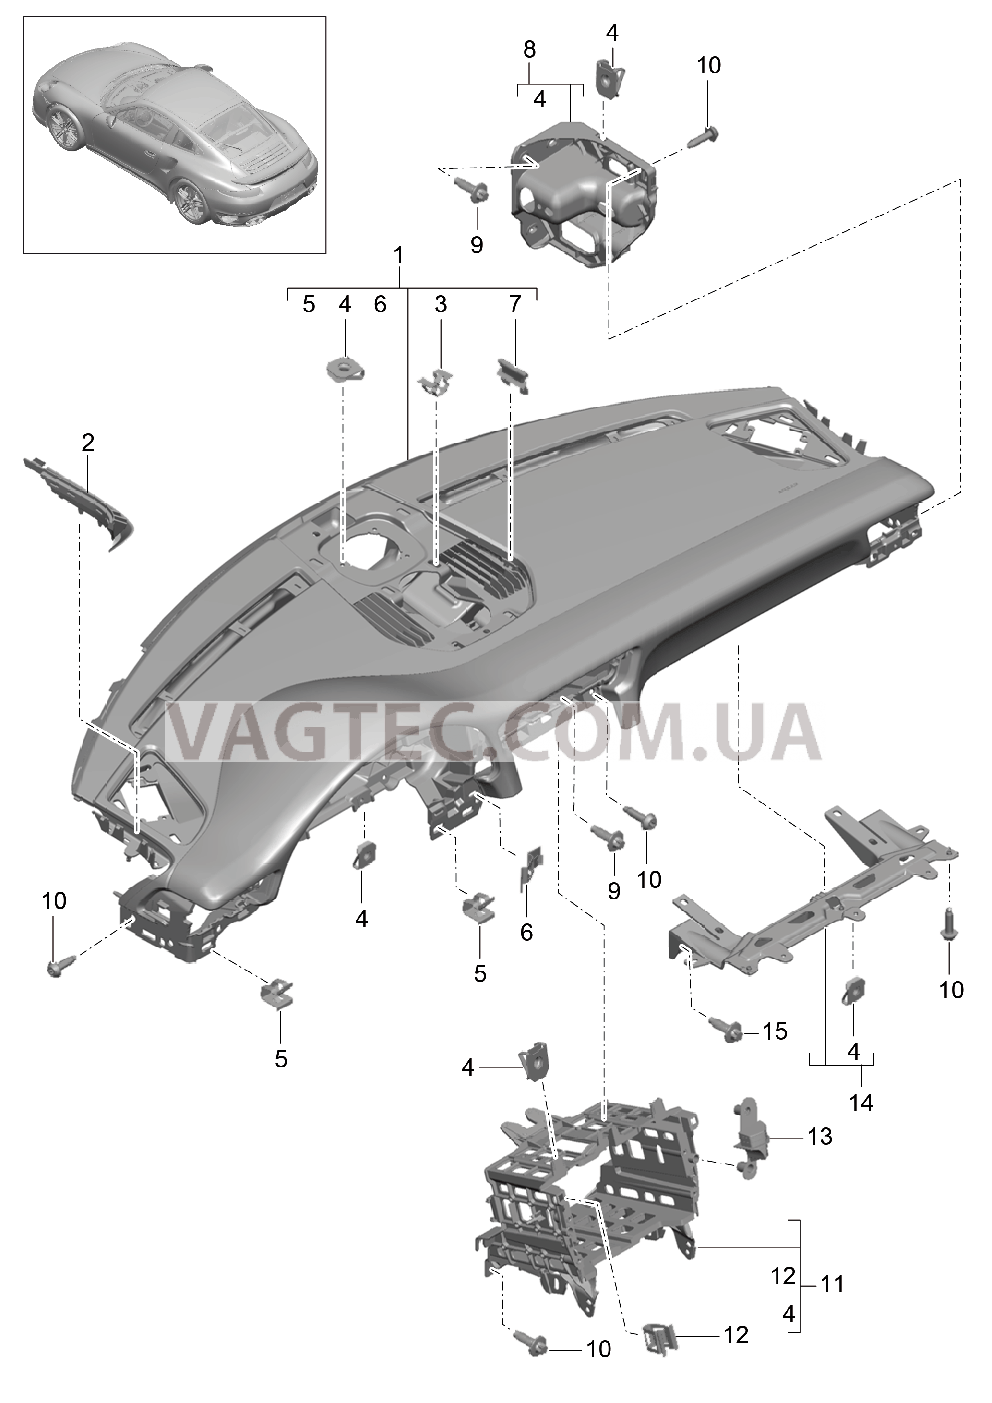 809-000 Облицовка передней панели, Верхняя часть, с, Крепежные элементы для PORSCHE Porsche991Turbo 2014-2017USA